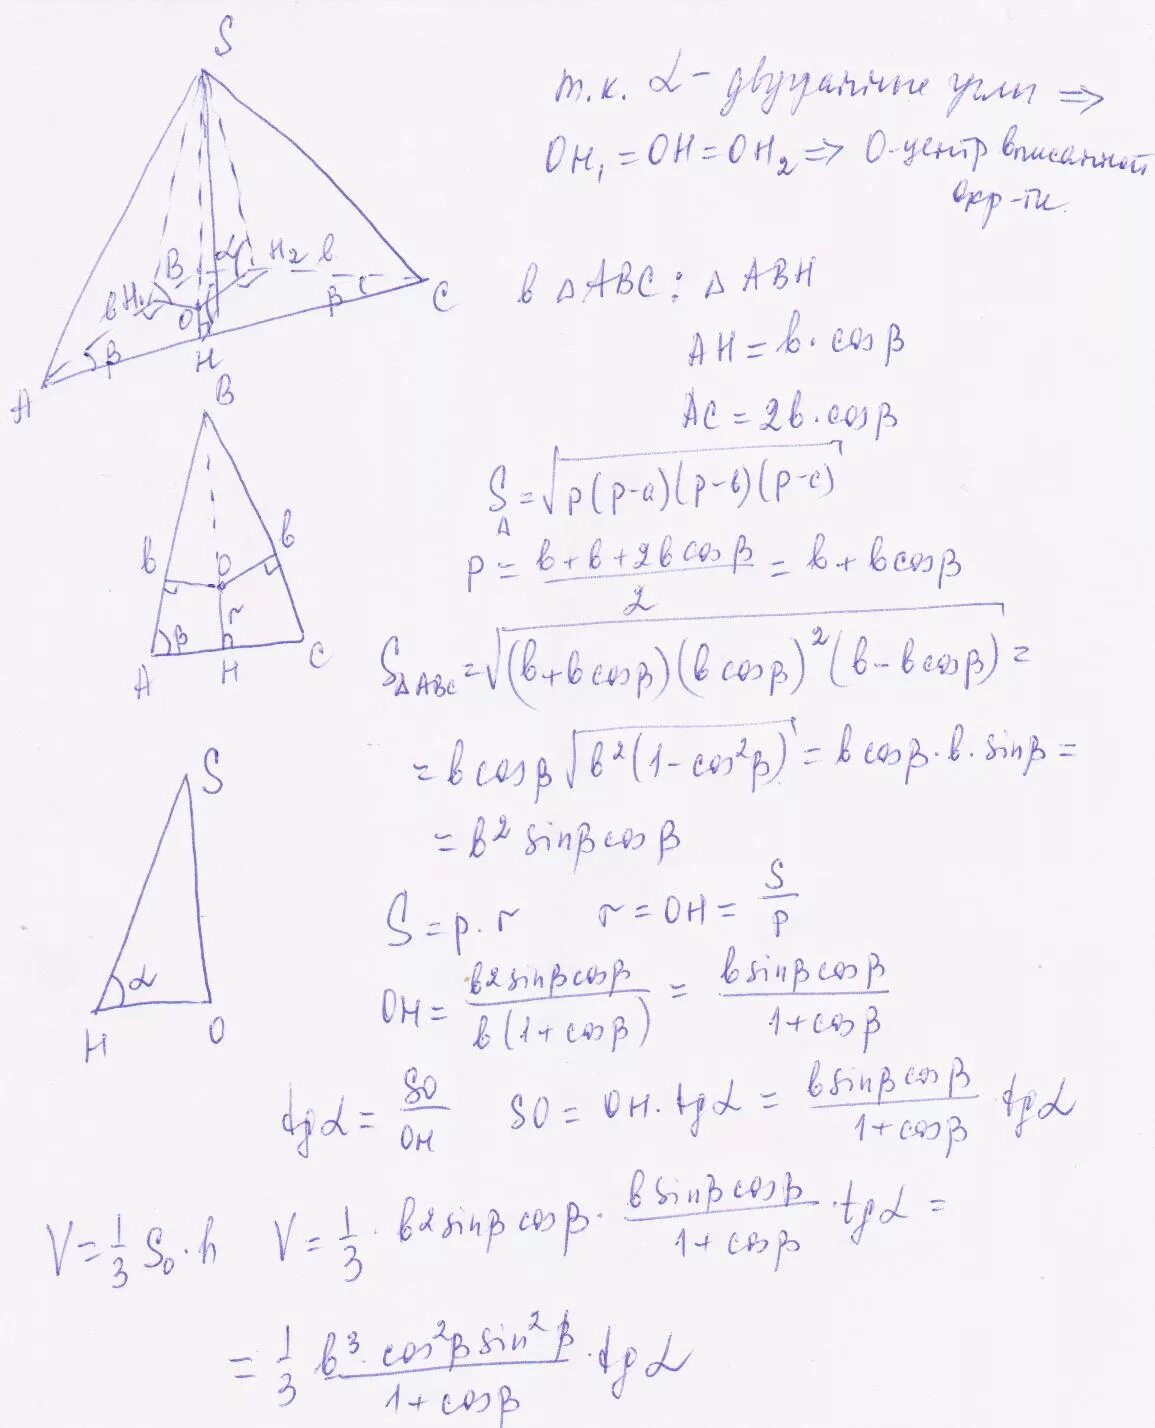 Боковые стороны пирамиды равнобедренные треугольники. Основание пирамиды равнобедренный треугольник с боковой стороной. Пирамида с основанием равнобедренного треугольника. Тетраэдр с основанием равнобедренного треугольника. Основанием треугольной пирамиды является равнобедренный треугольник